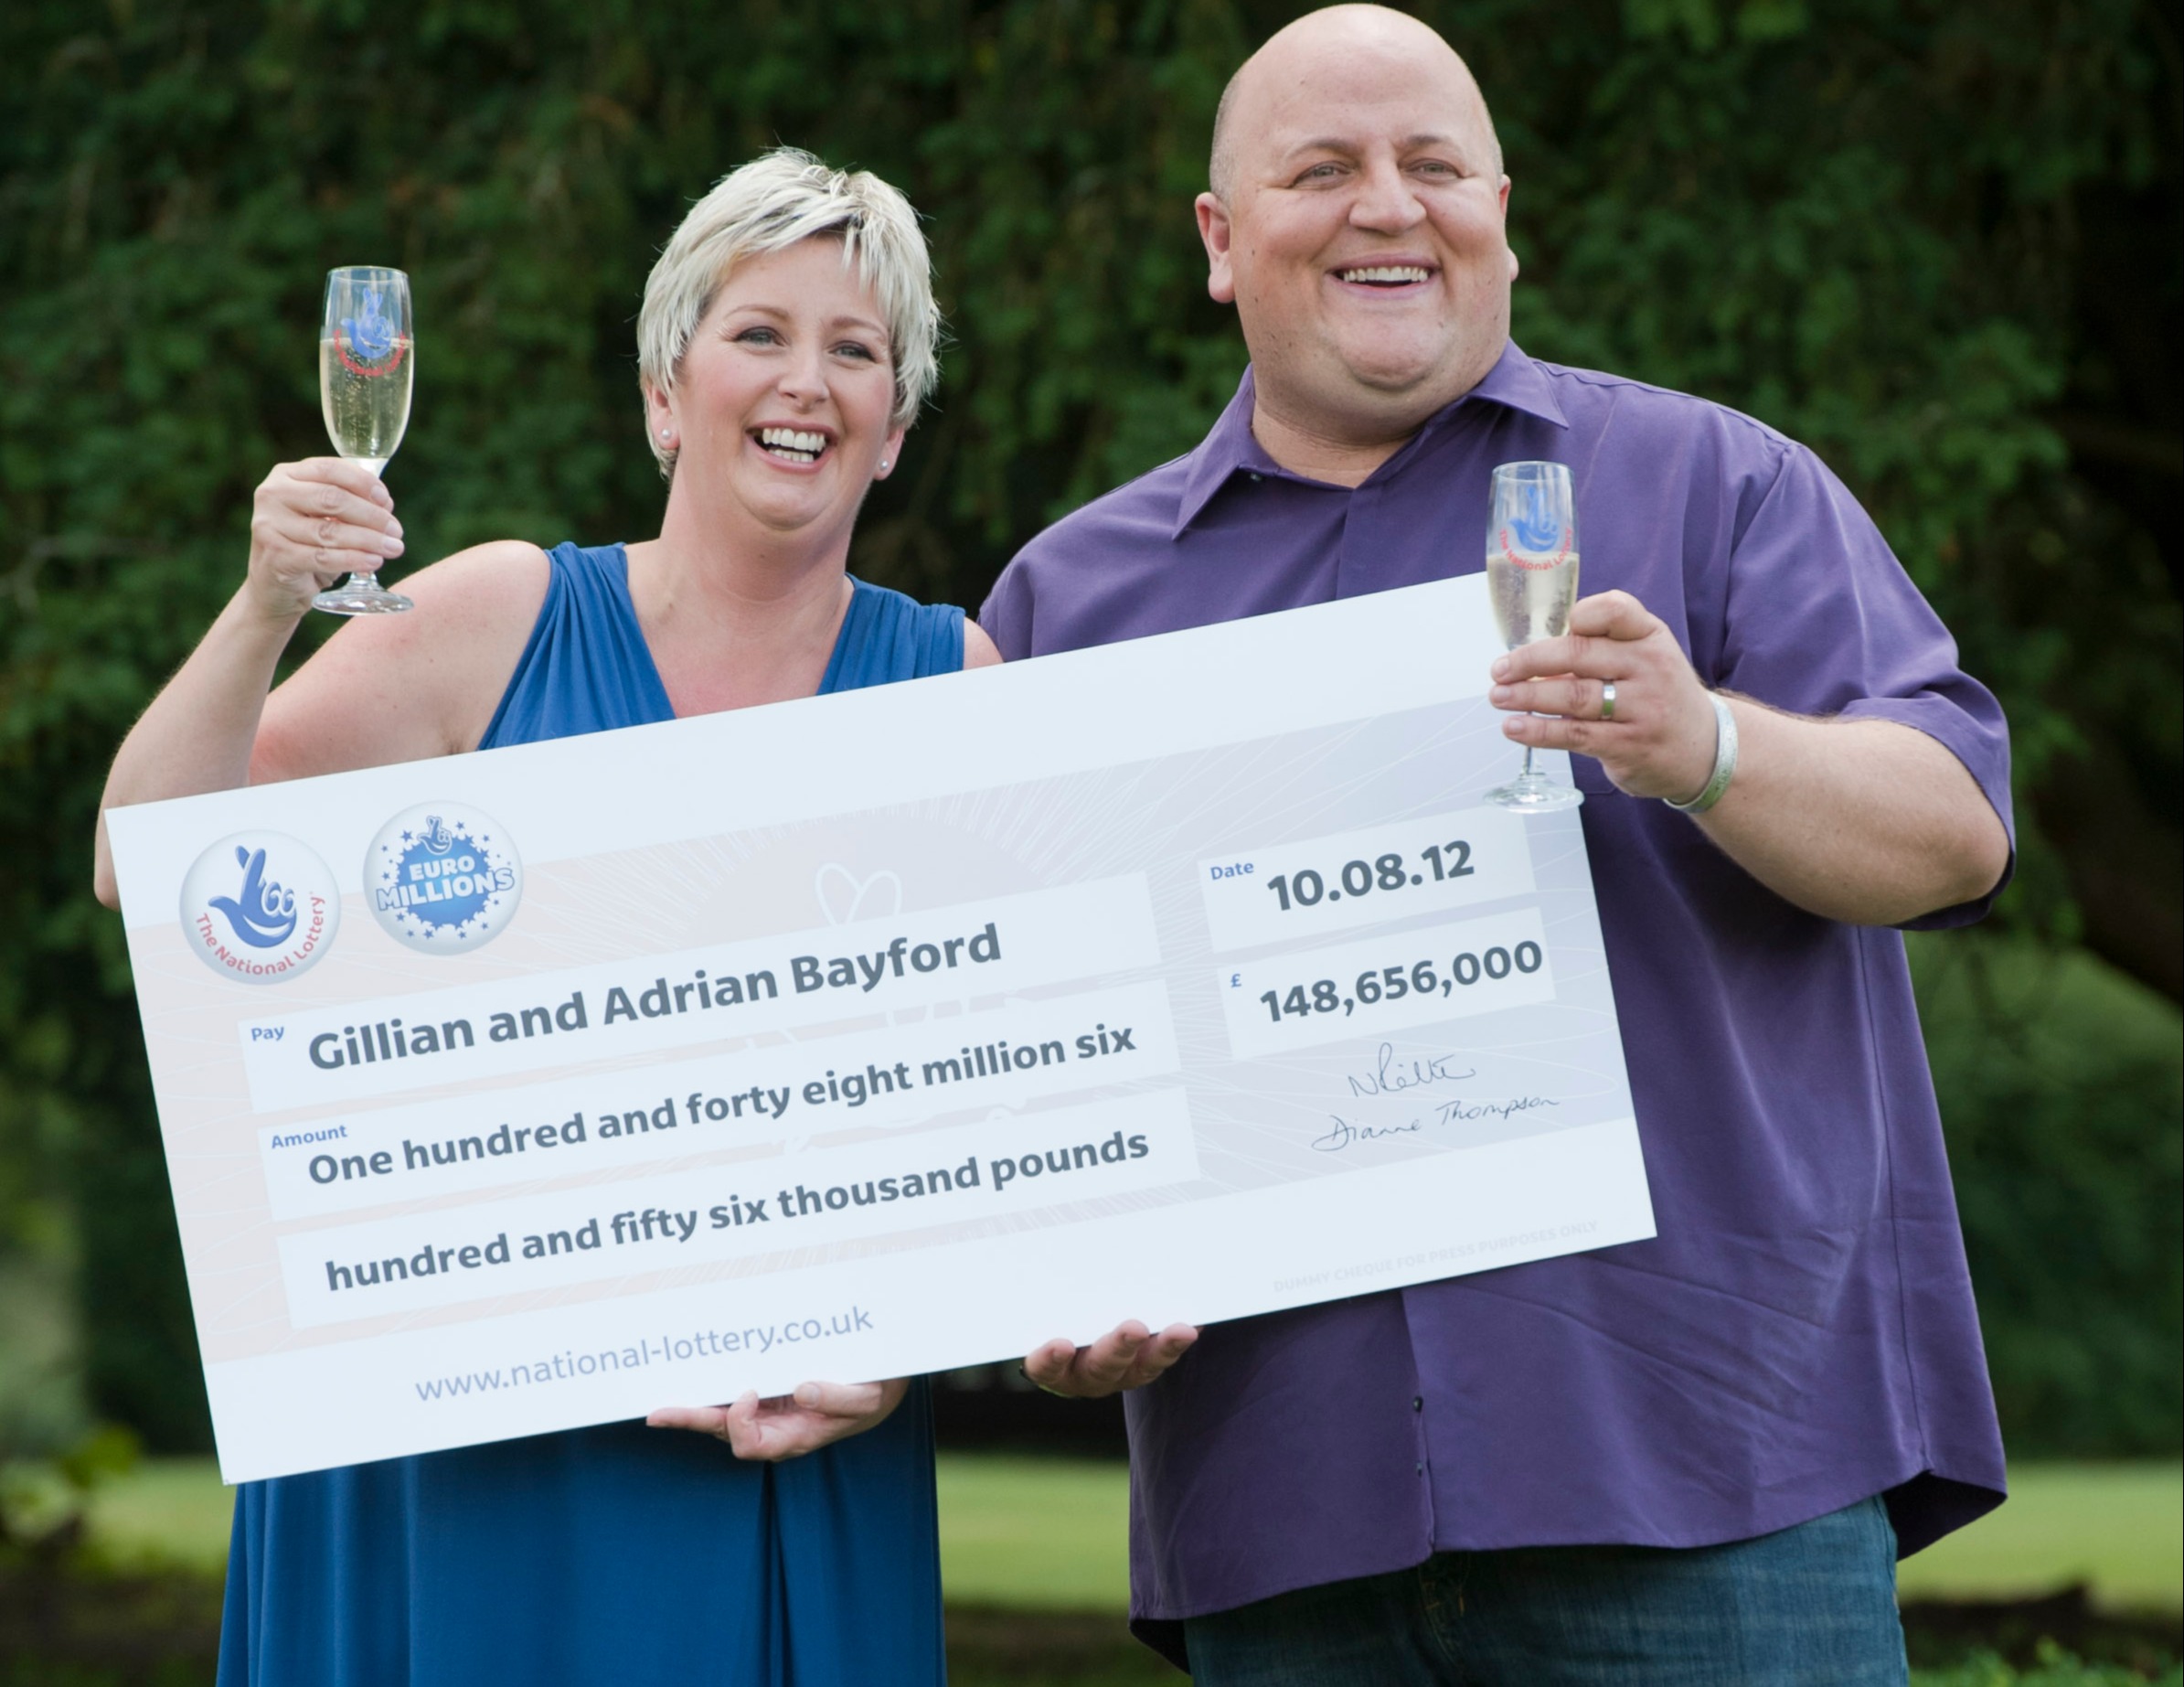 Der ehemalige Postbote trennte sich von seiner Frau Gillian, nachdem er einen EuroMillions-Preis von 148 Millionen Pfund gewonnen hatte